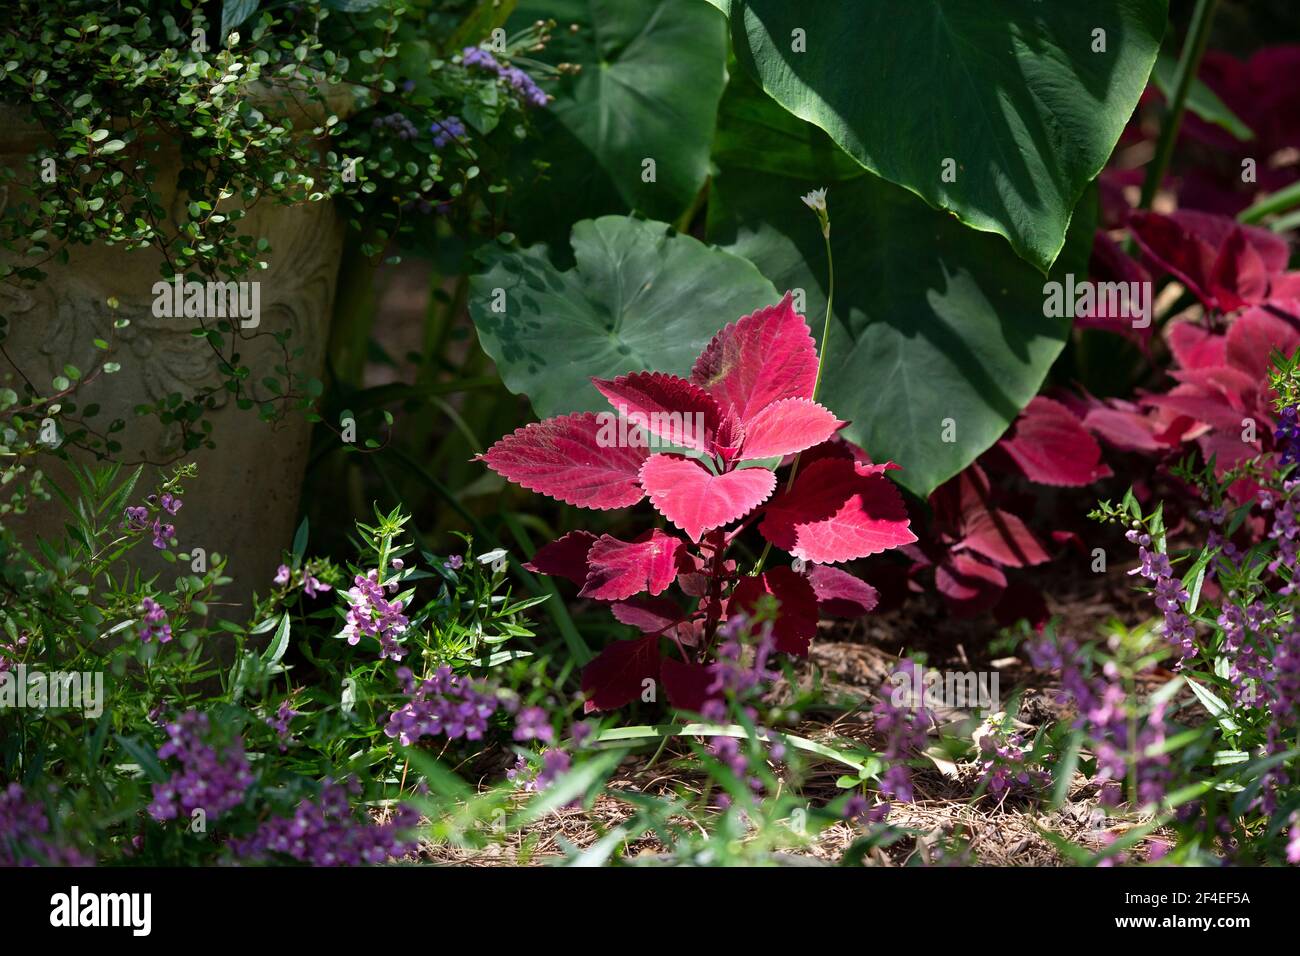 Feuilles d'un coléaire pourpre devant de grandes plantes d'oreille d' éléphant, dans un jardin de petites fleurs pourpres Photo Stock - Alamy